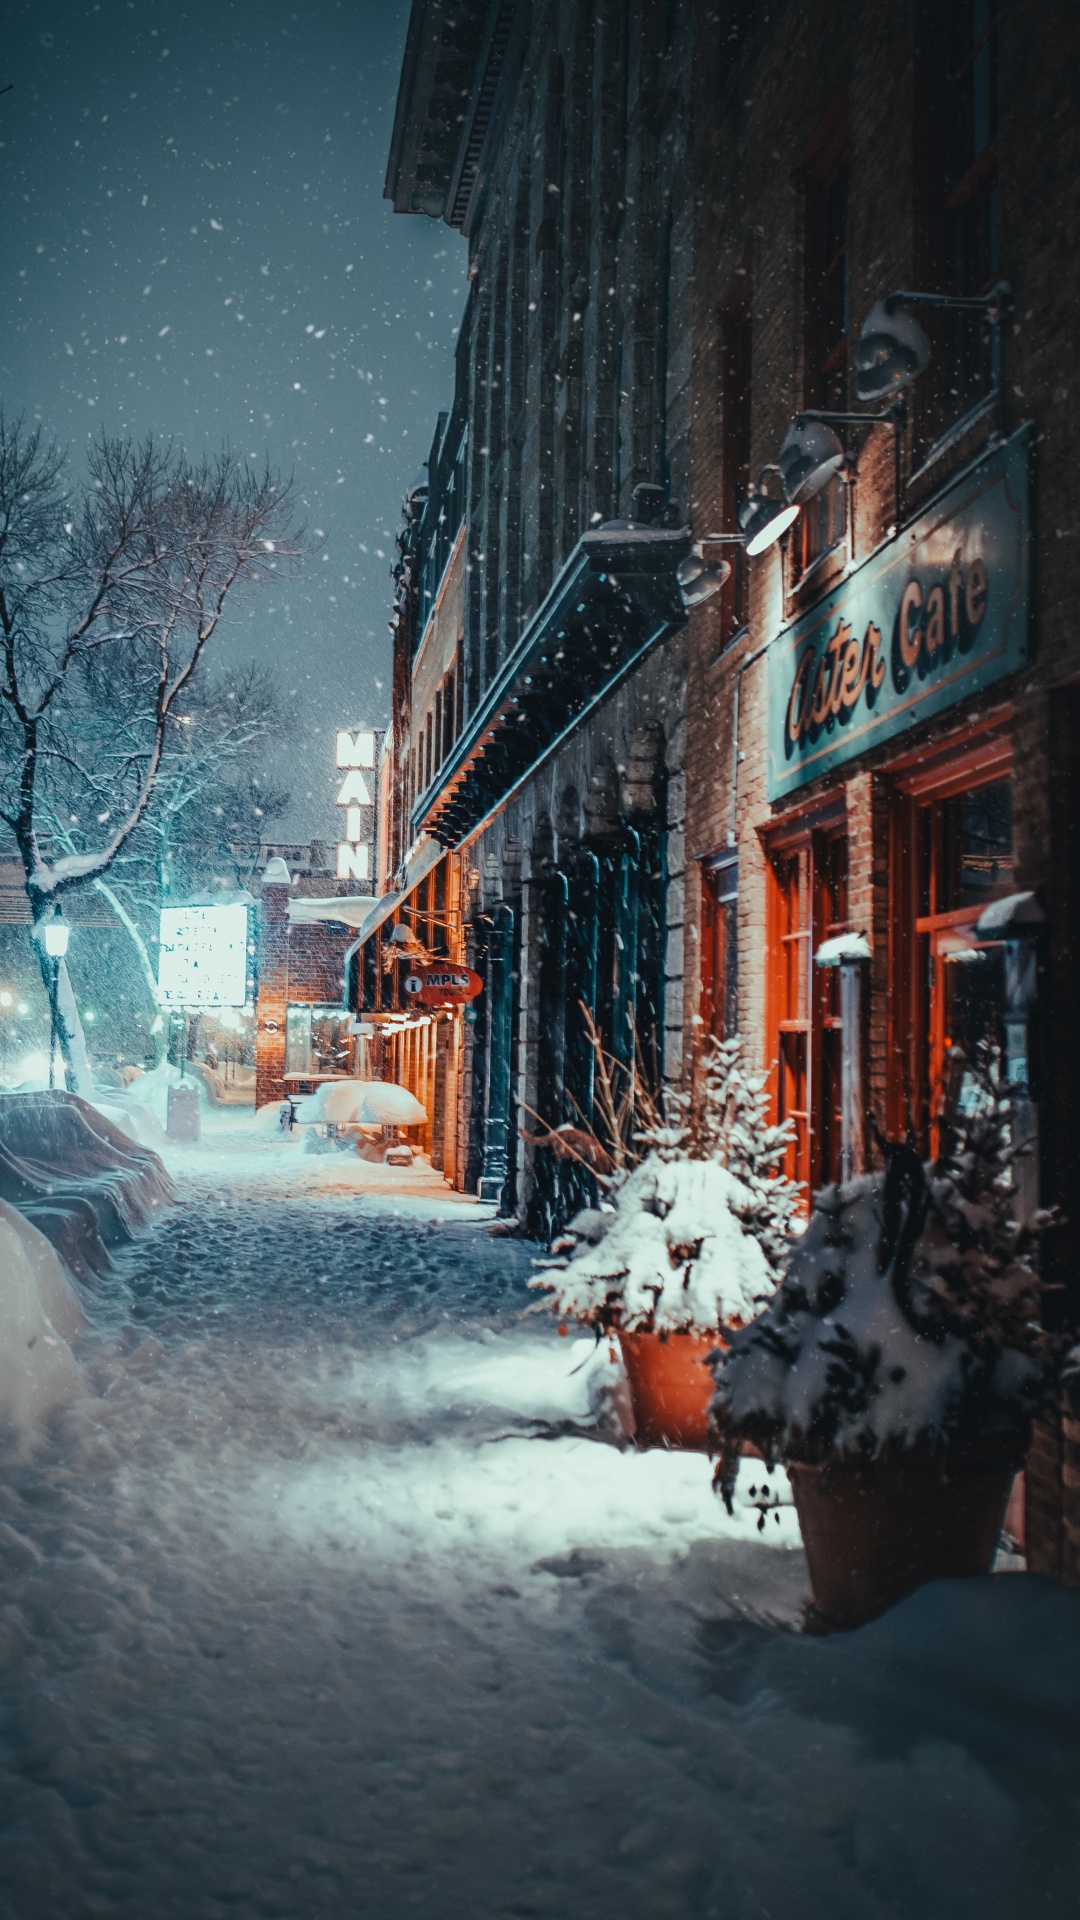 冬天, 冻结, 街, 城市, 街区 壁纸 1080x1920 允许